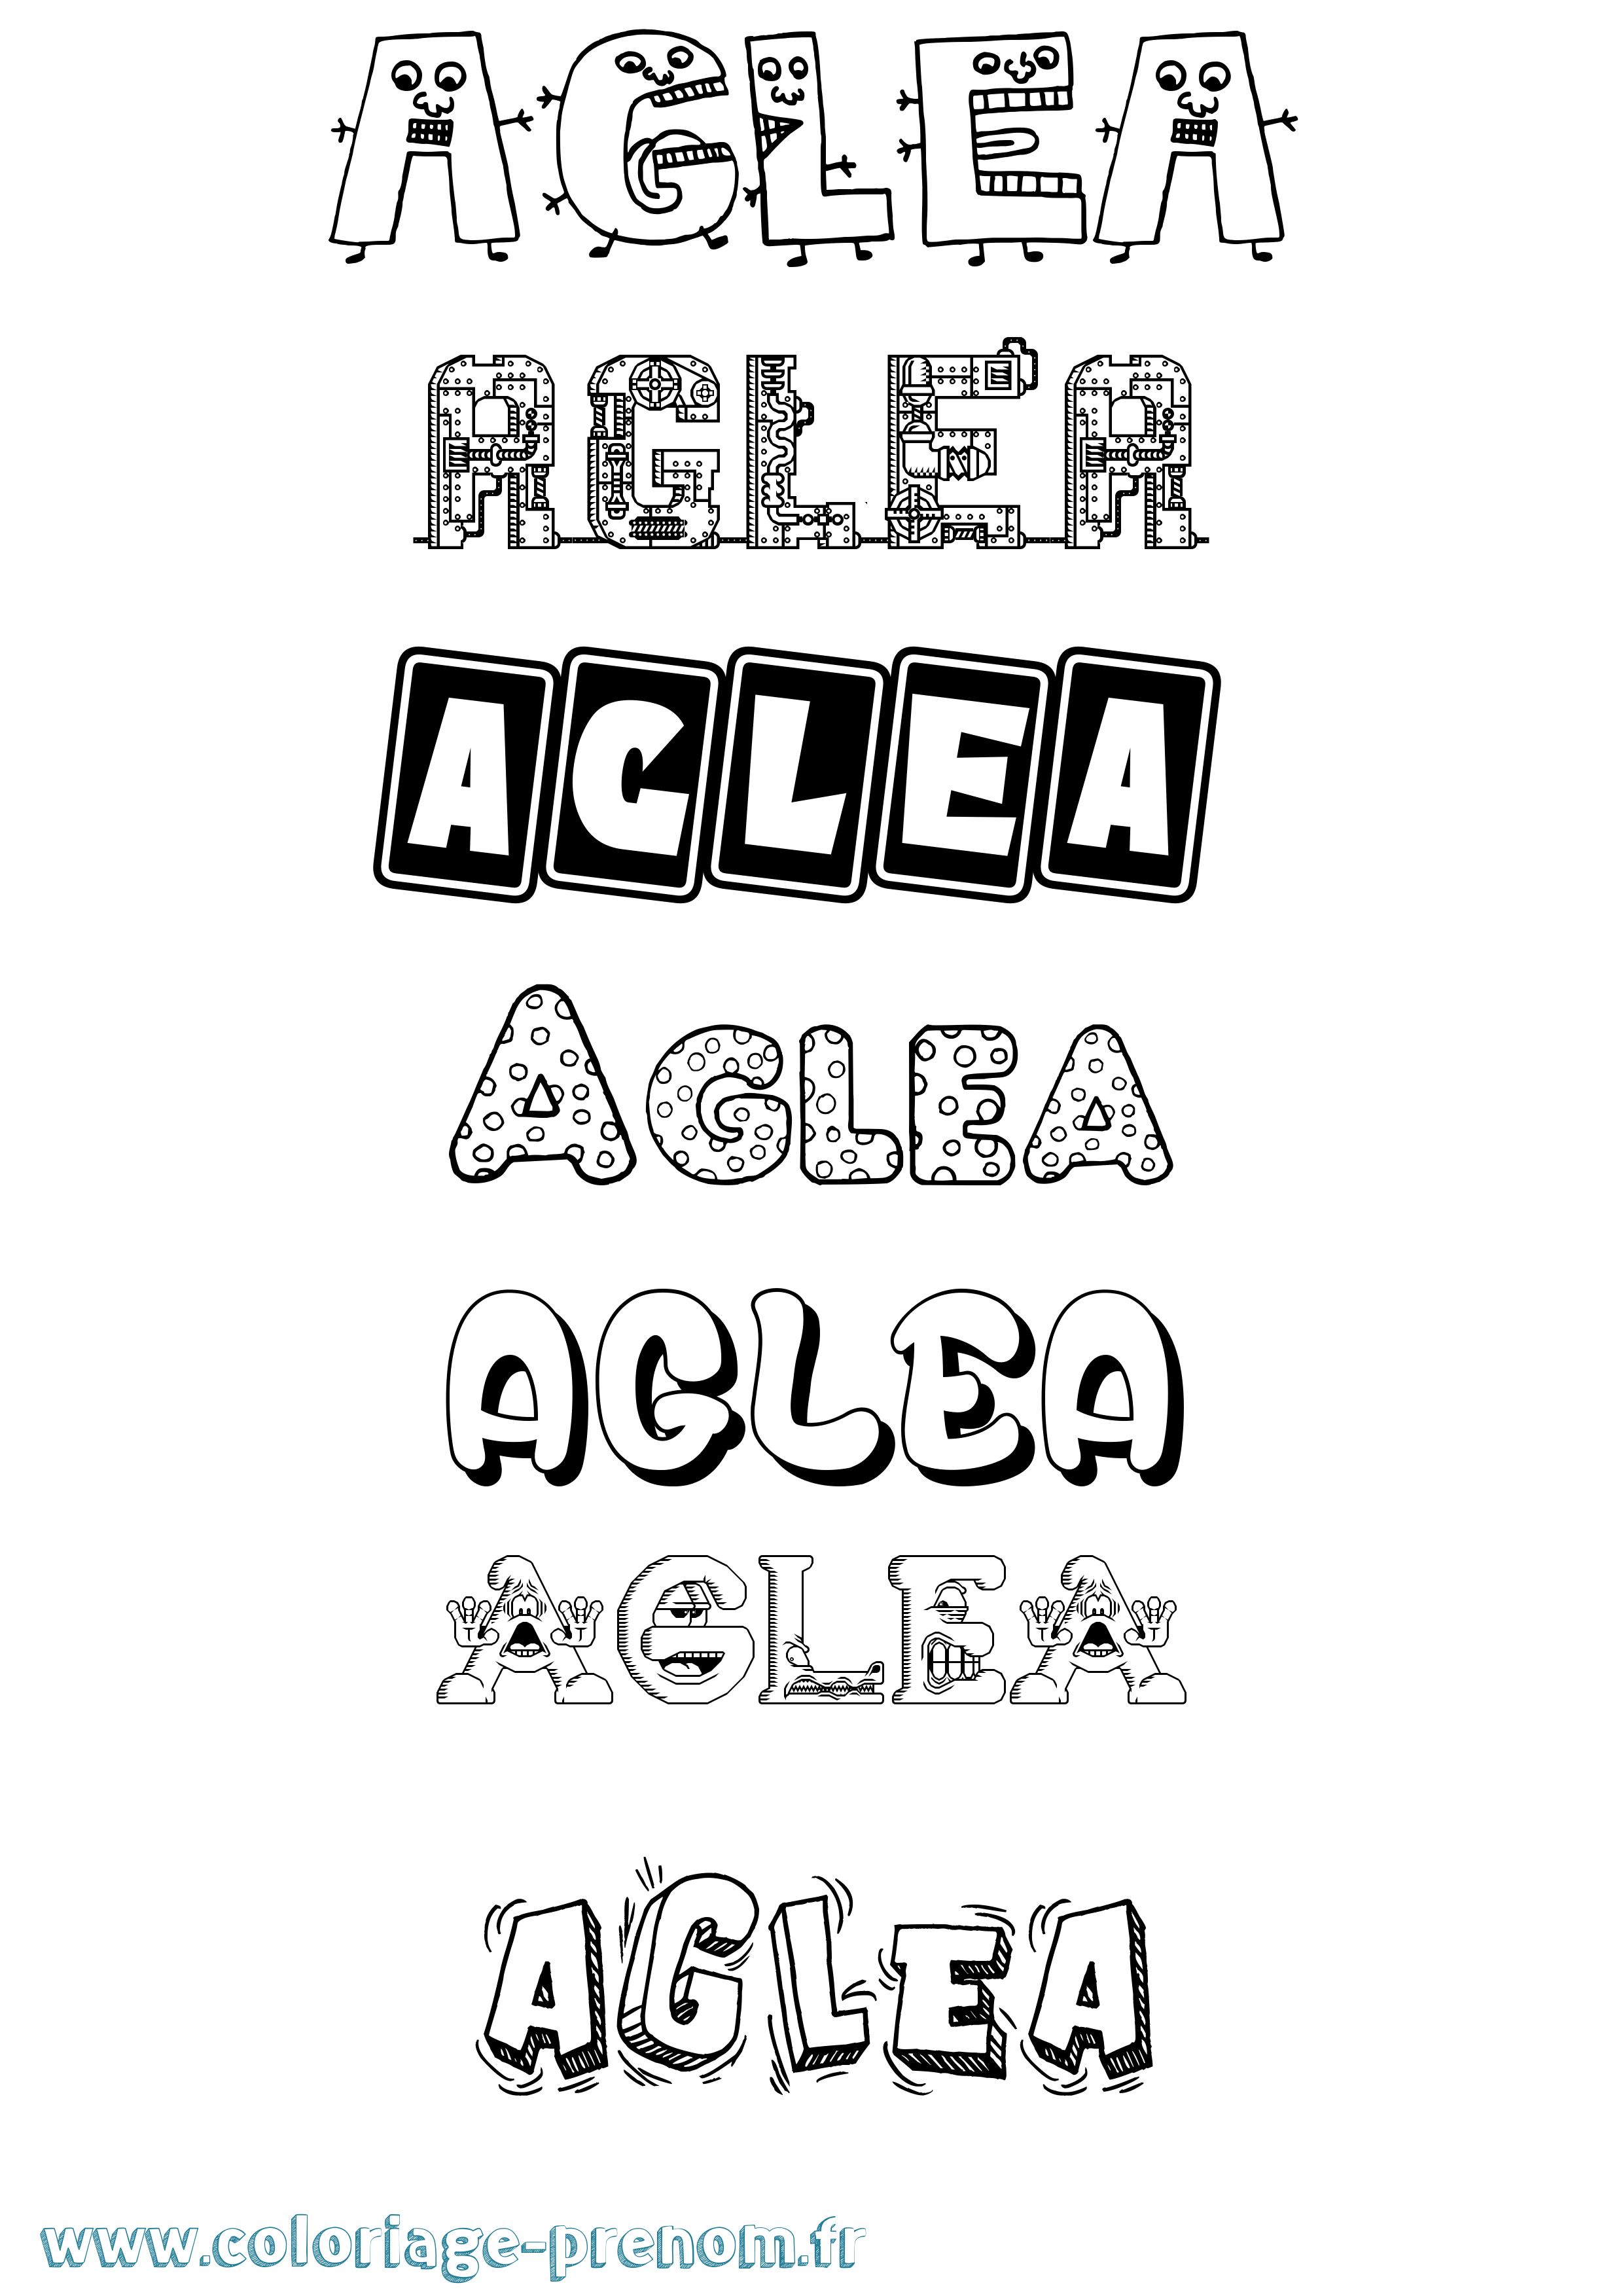 Coloriage prénom Aglea Fun